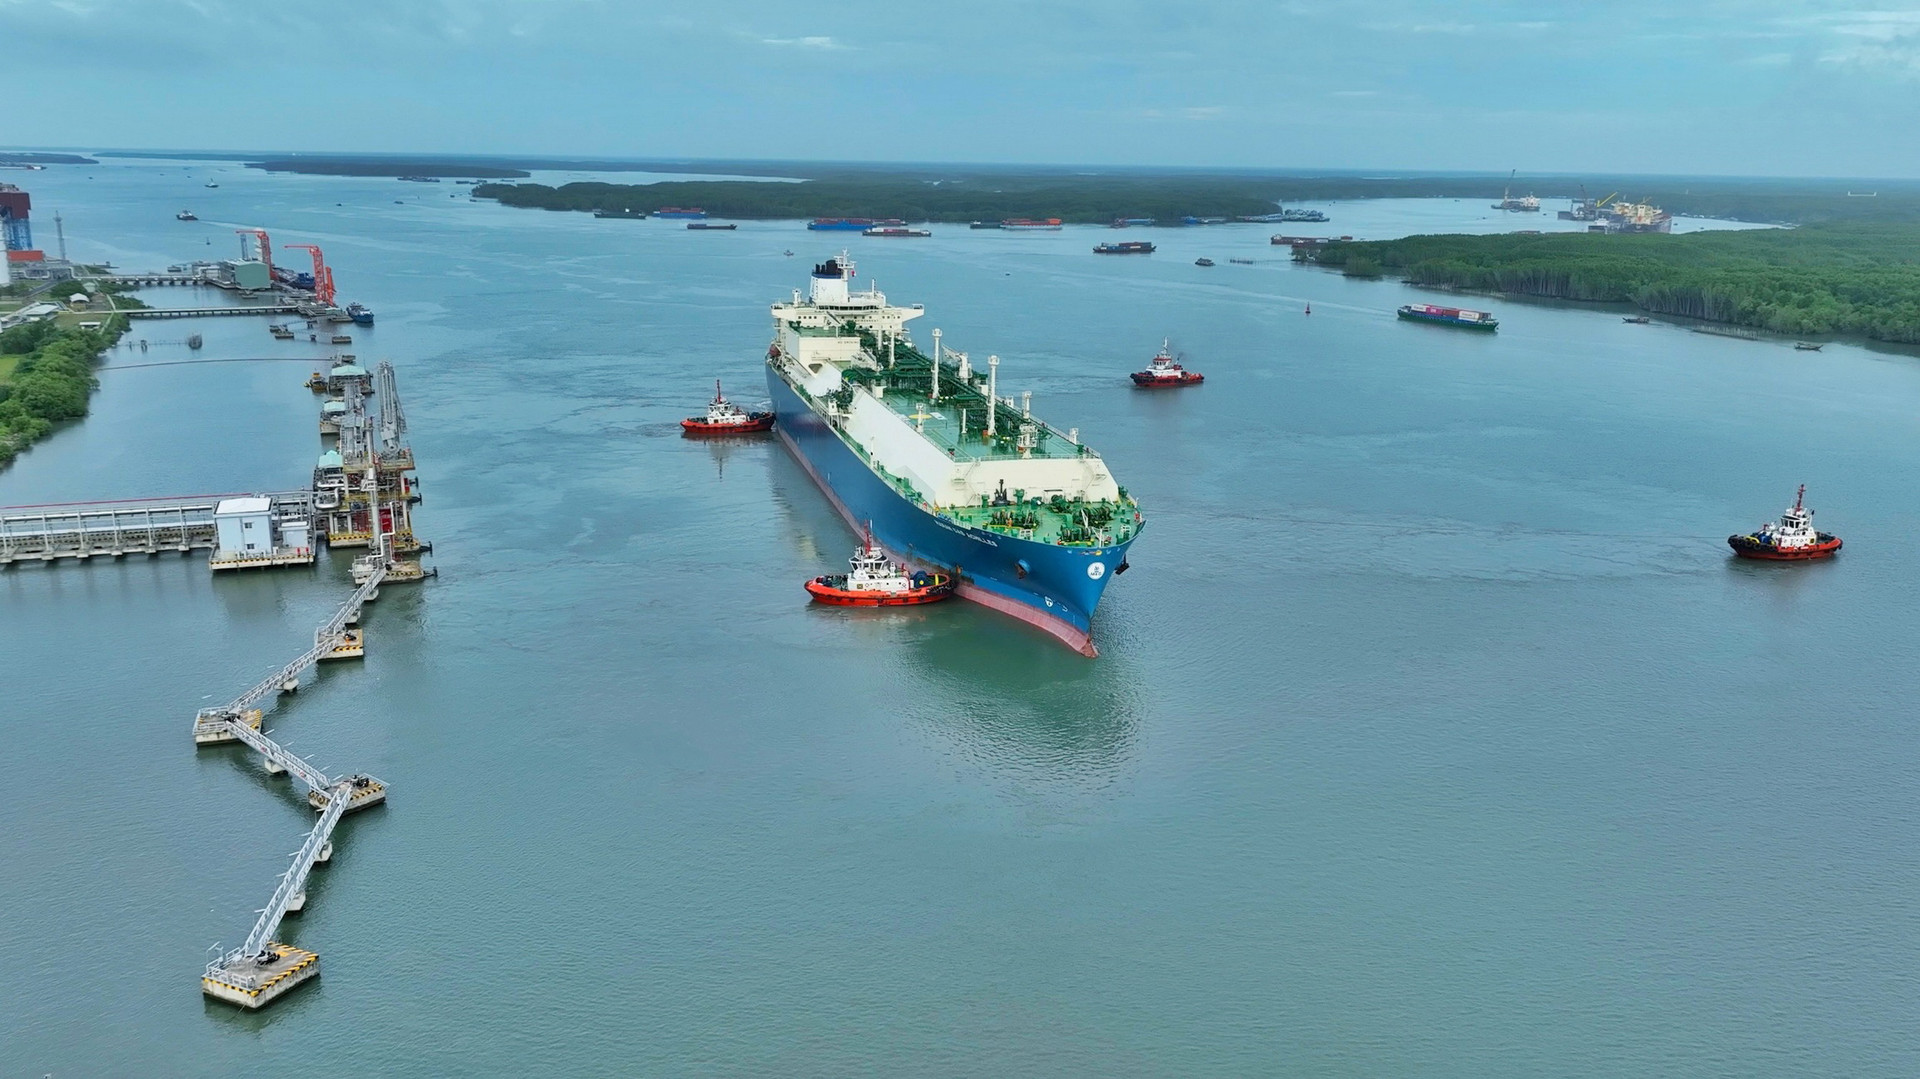 Chuỗi dự án Kho chứa LNG Thị Vải nằm ở vị trí thuận lợi với luồng hàng hải sôi động Cái Mép - Thị Vải, phù hợp tiếp nhận các tàu LNG siêu trọng lực.